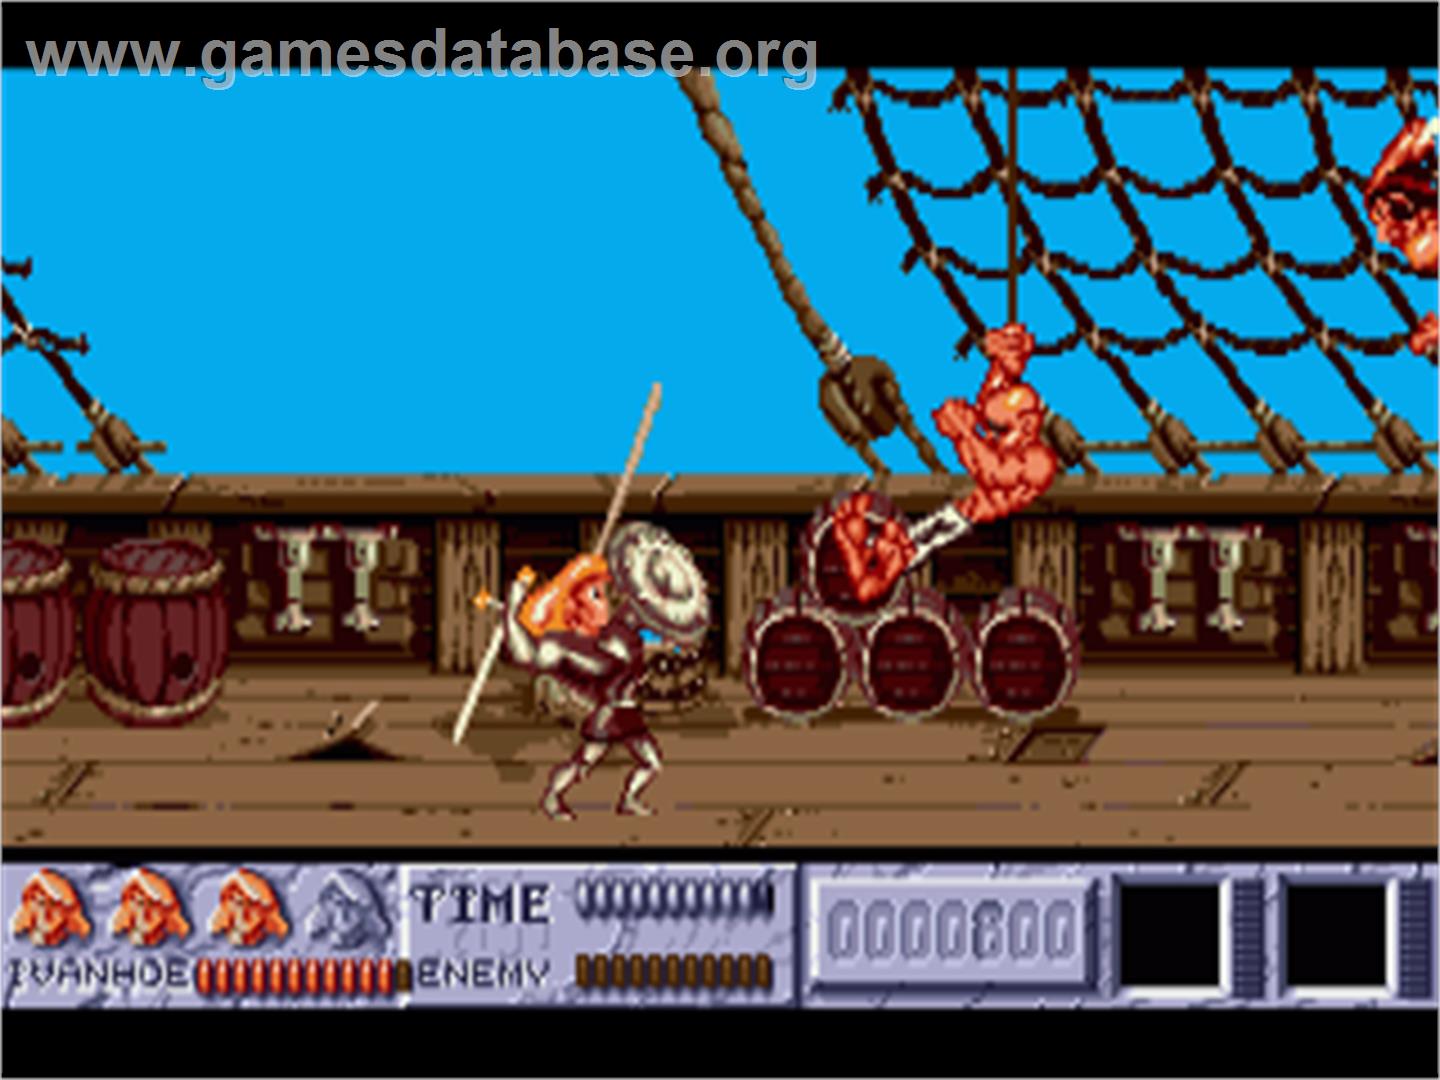 Ivanhoe - Commodore Amiga - Artwork - In Game